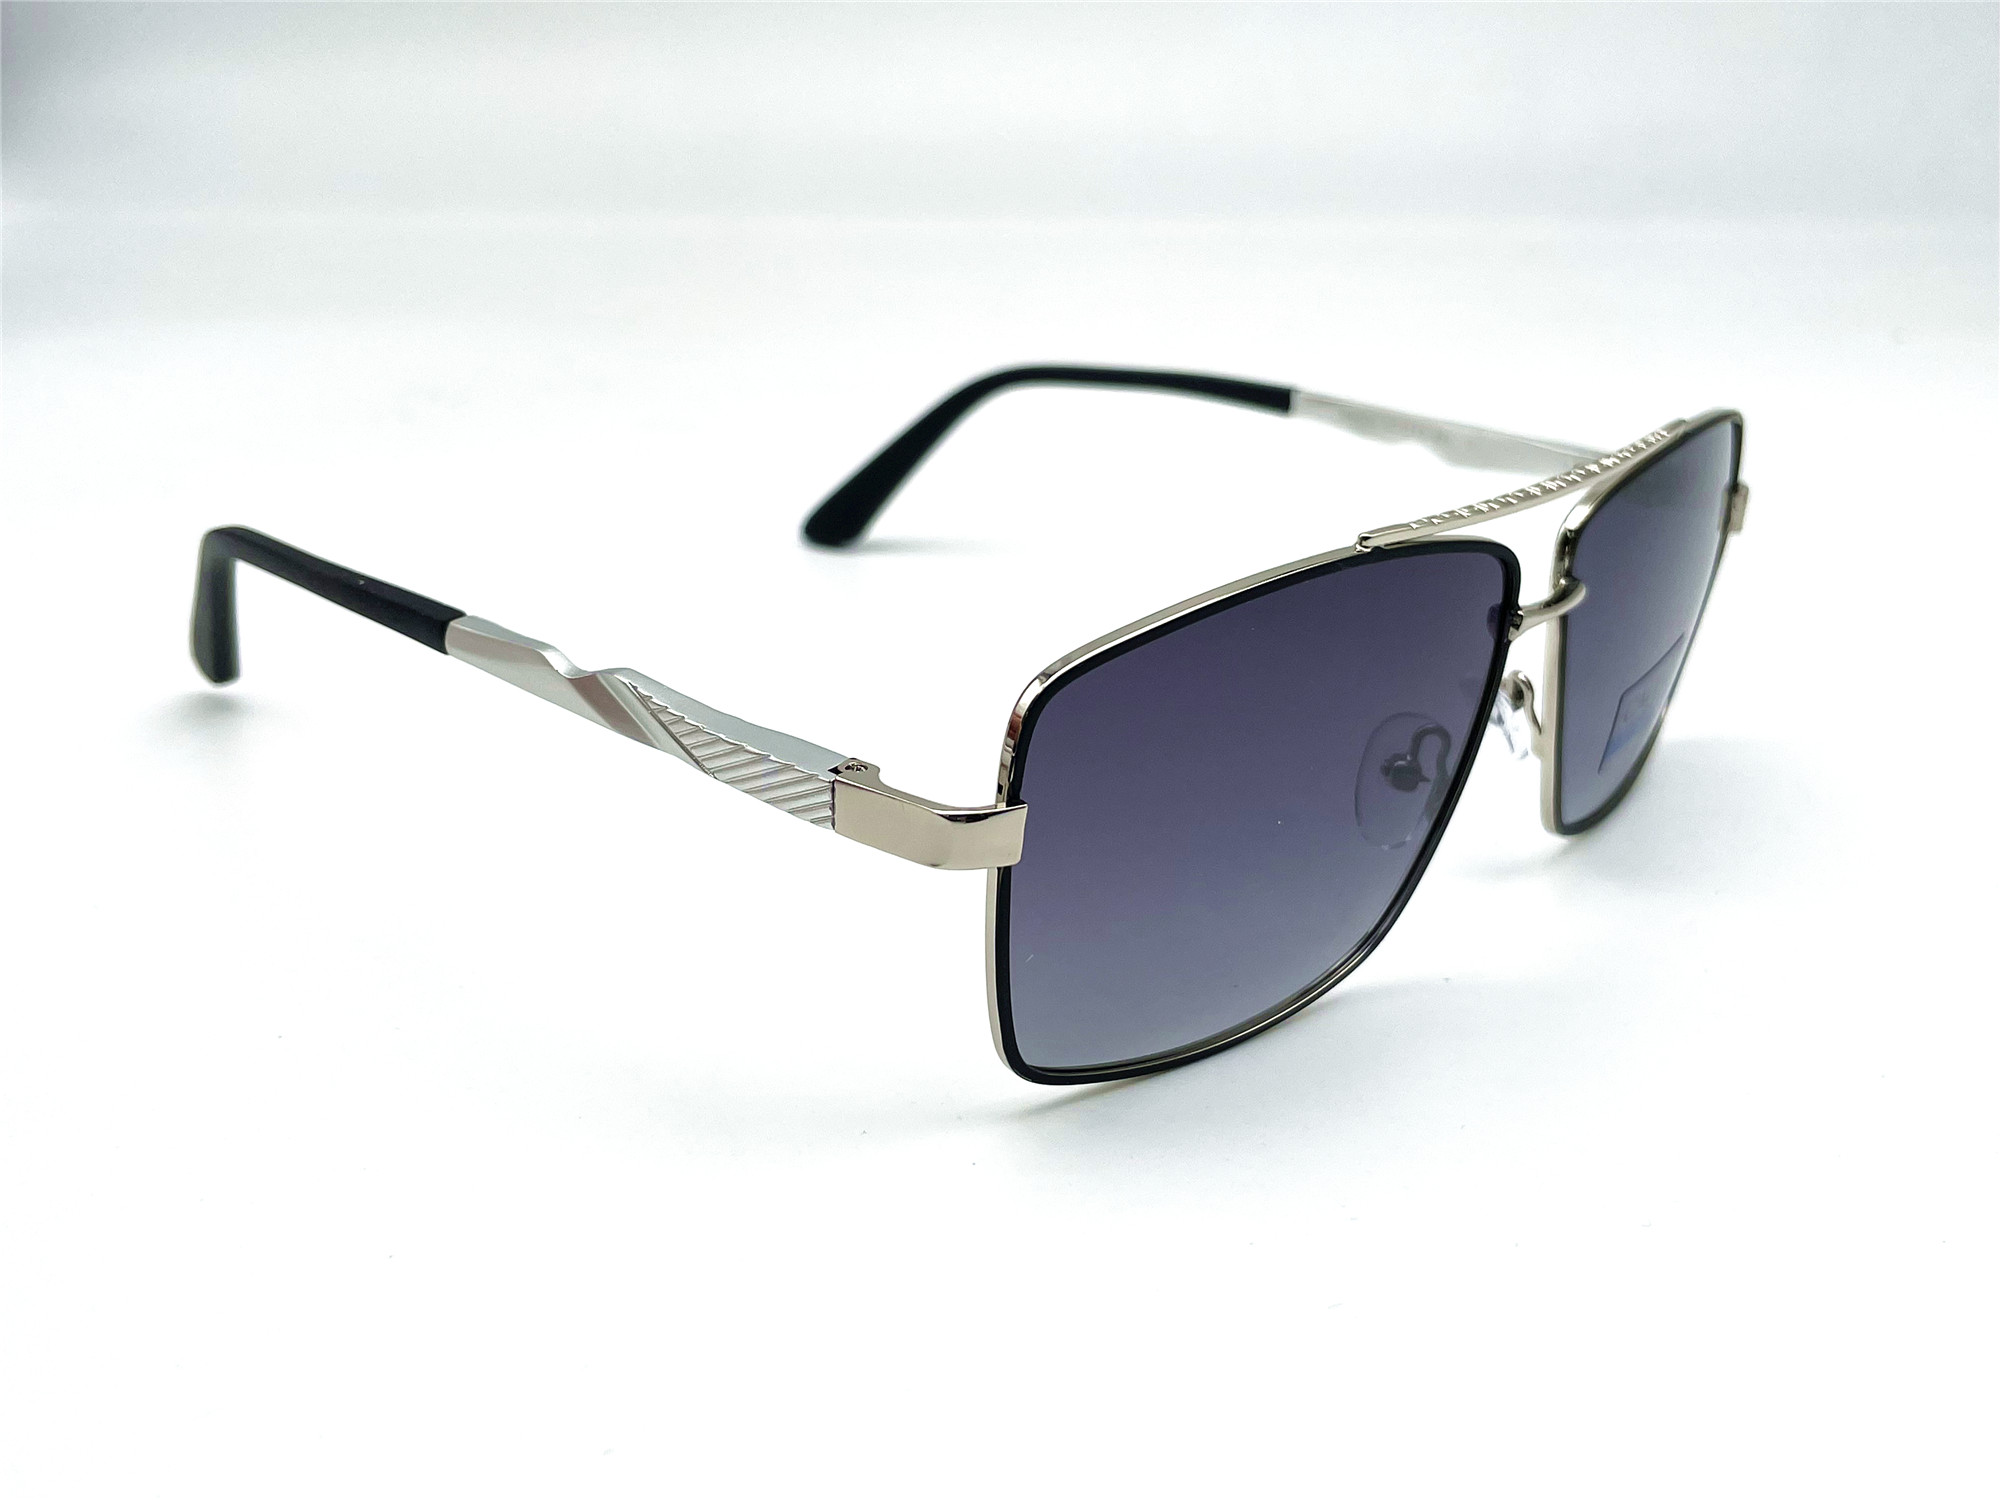  Солнцезащитные очки картинка Мужские Caipai Polarized Квадратные P4008-С4 